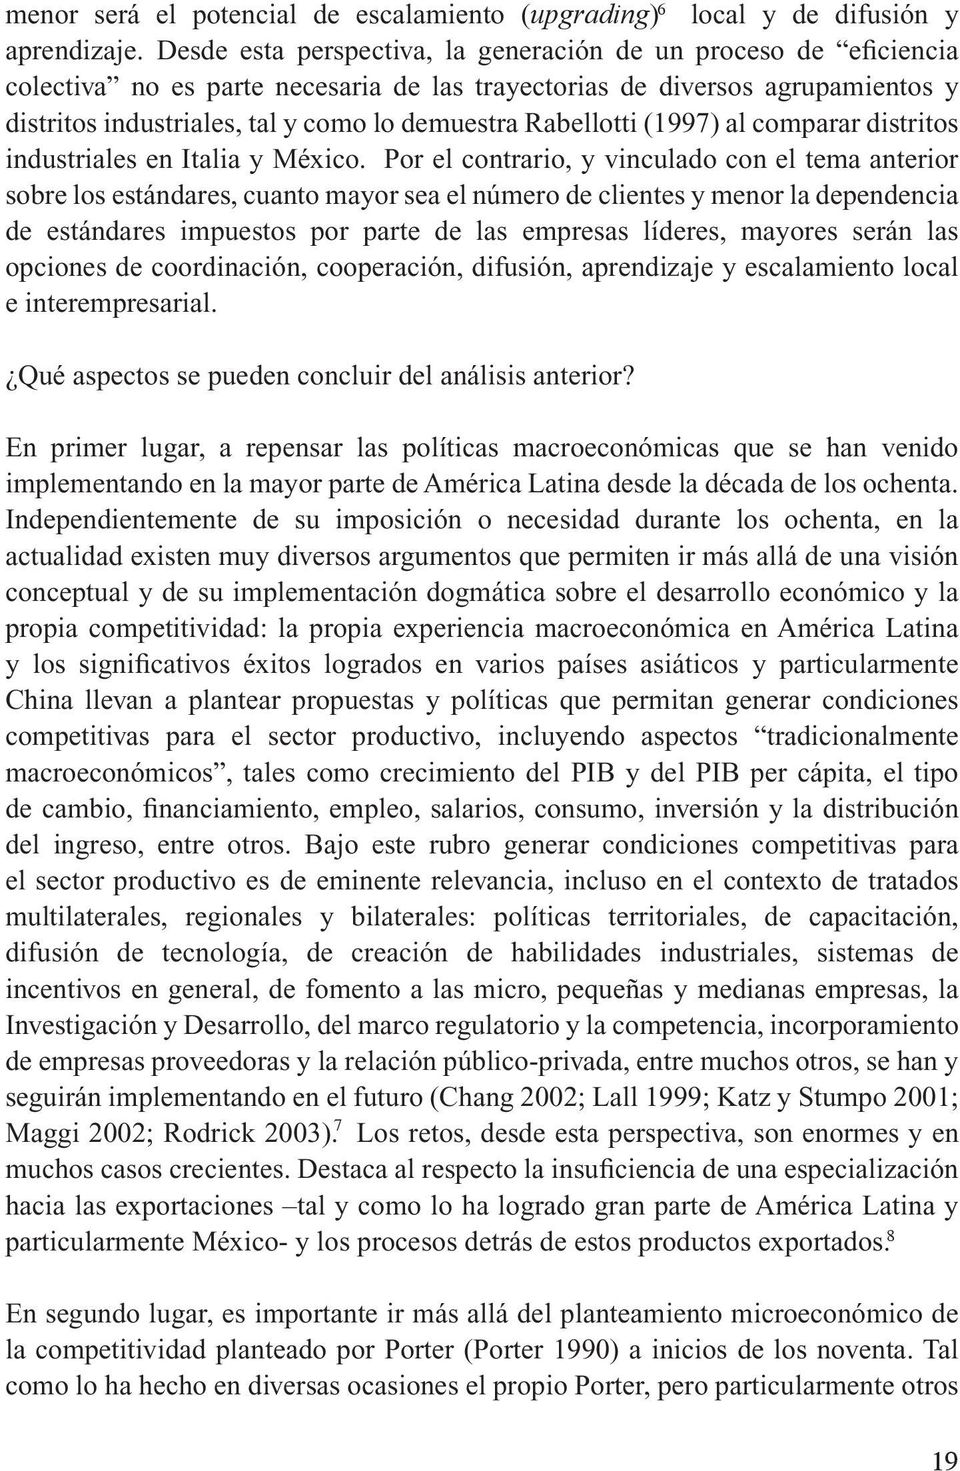 Rabellotti (1997) al comparar distritos industriales en Italia y México.